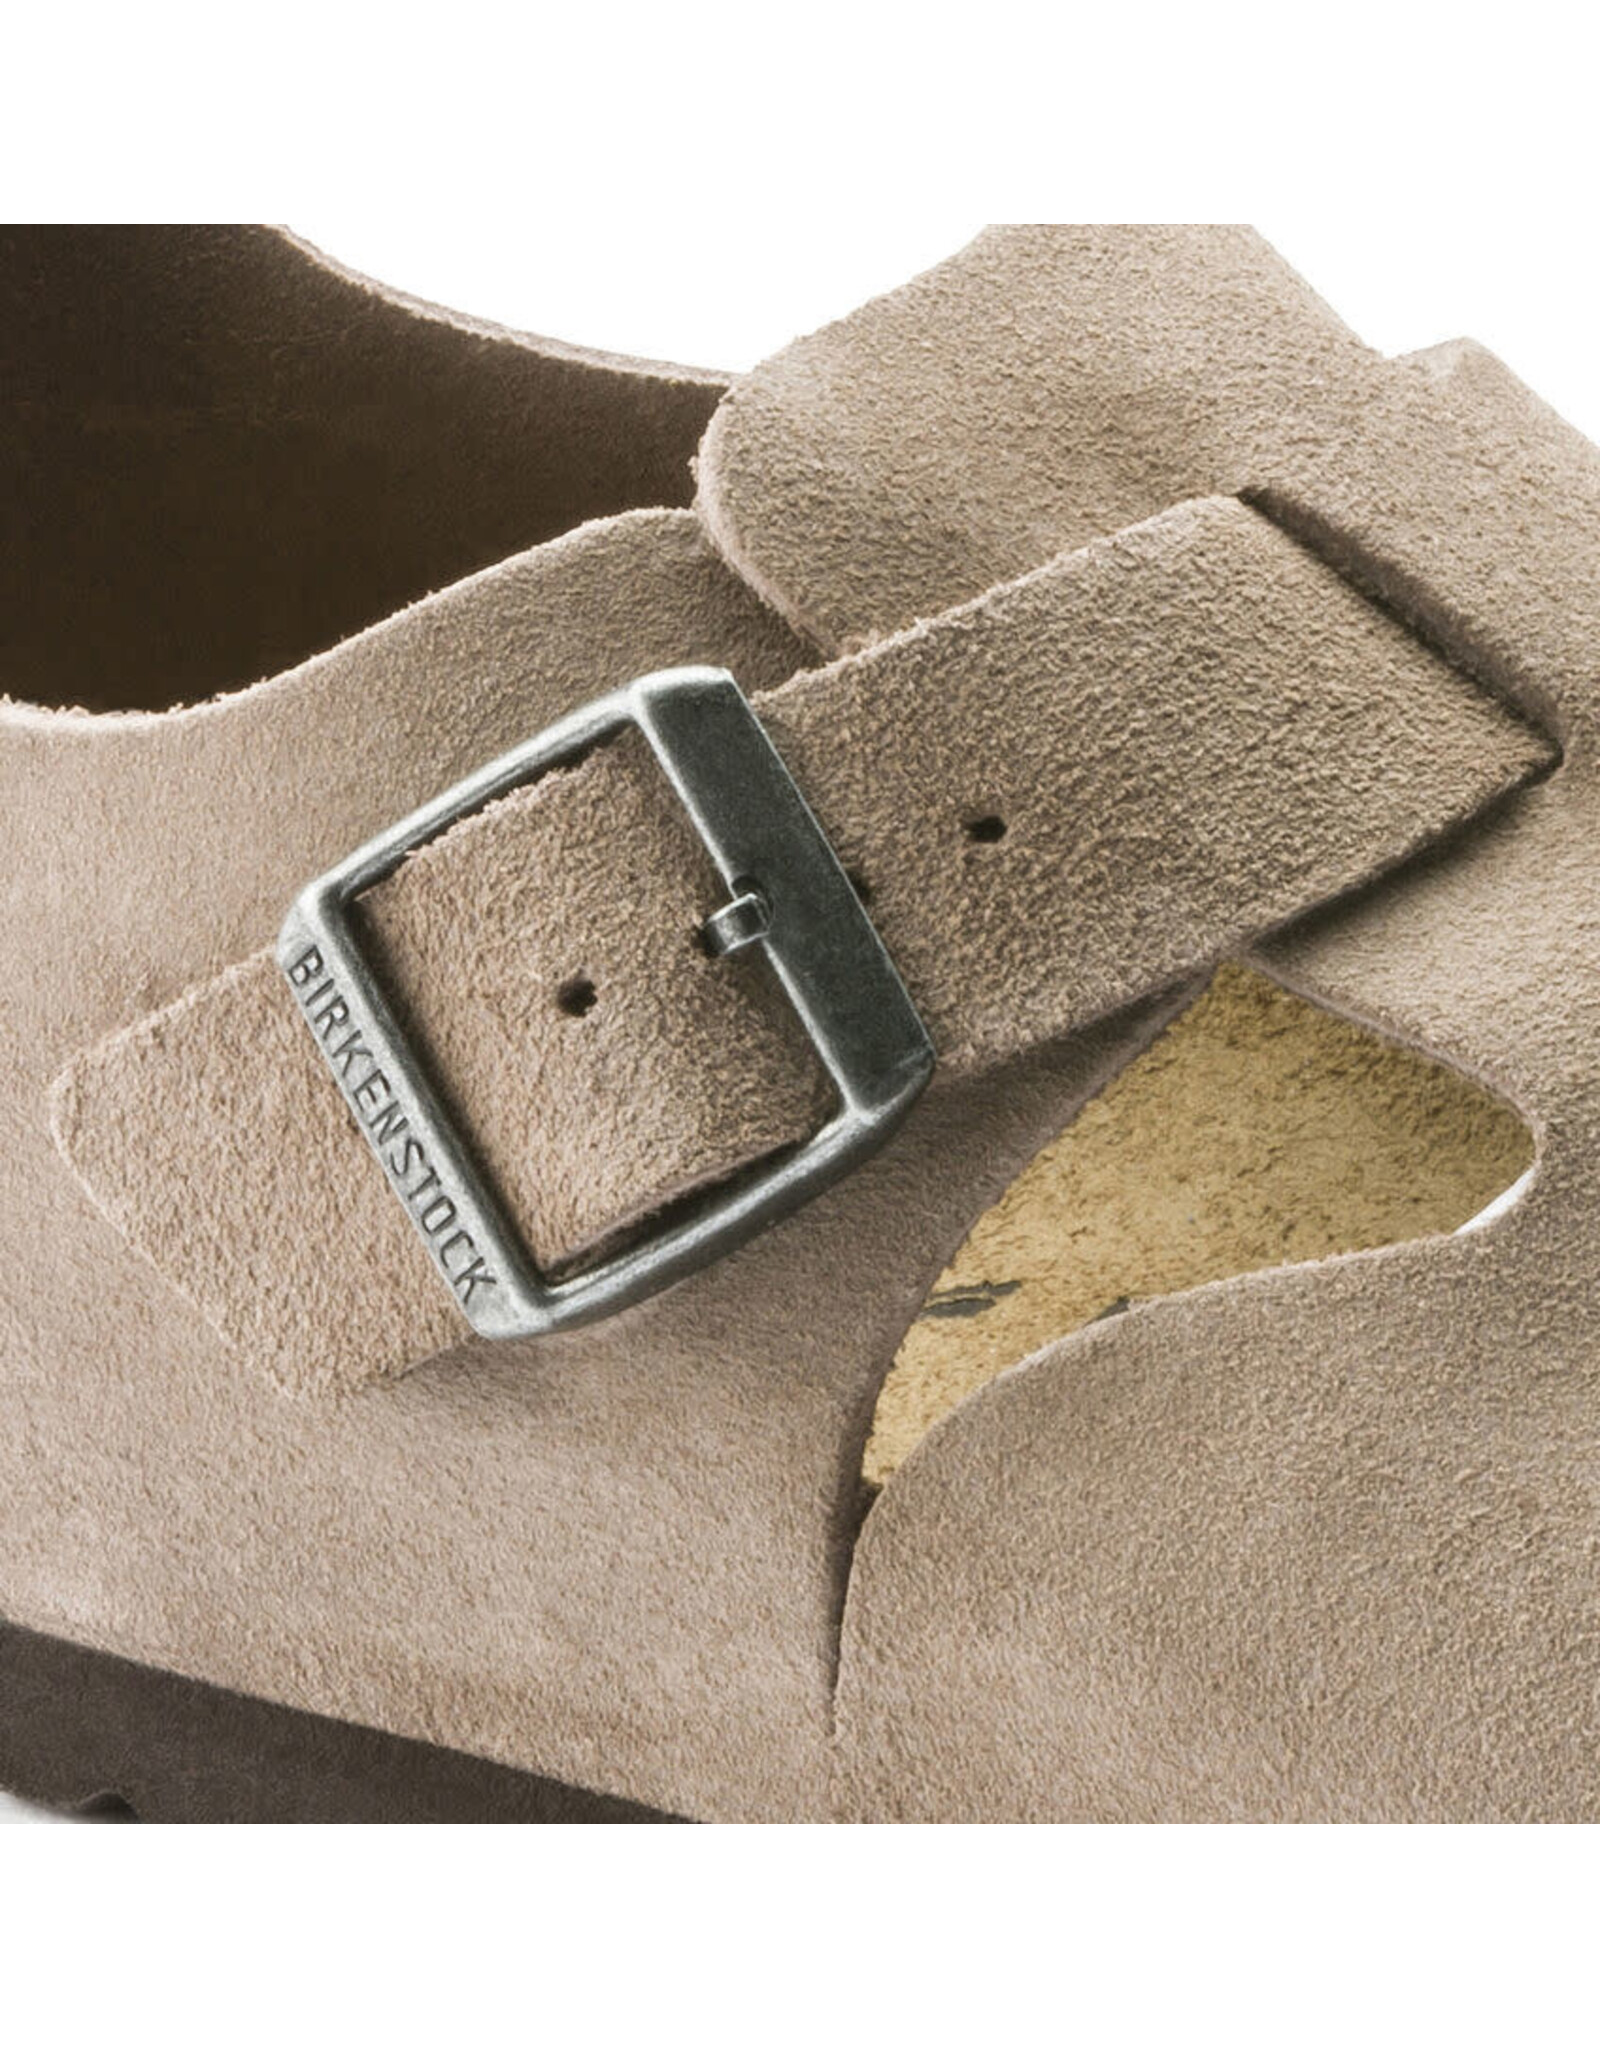 Birkenstock London Suede Leather Shoe